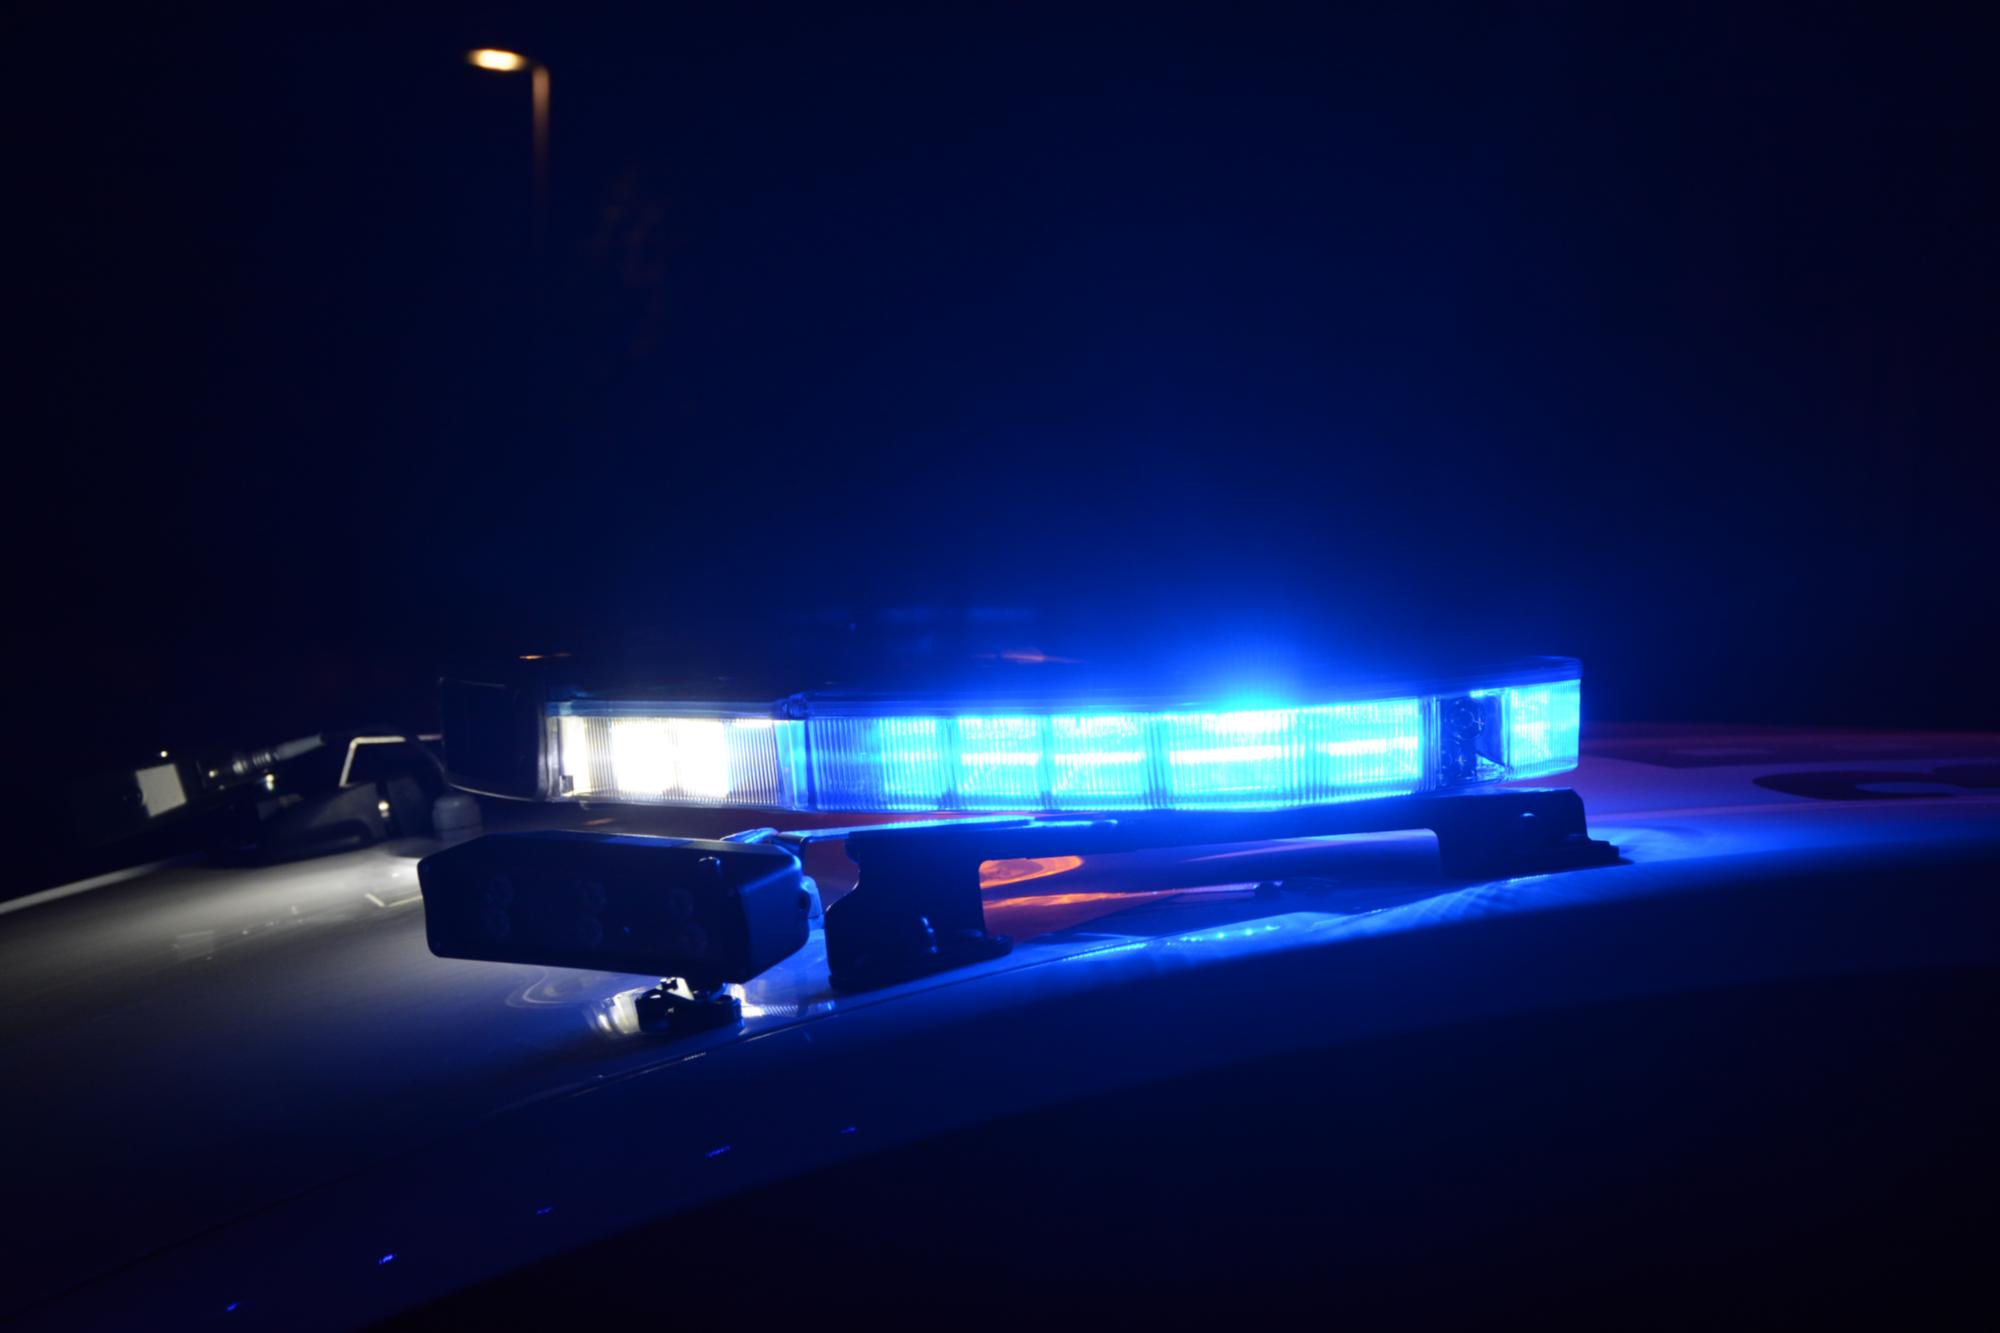 Imagen de la sirena luminosa de un vehículo de policía nacional